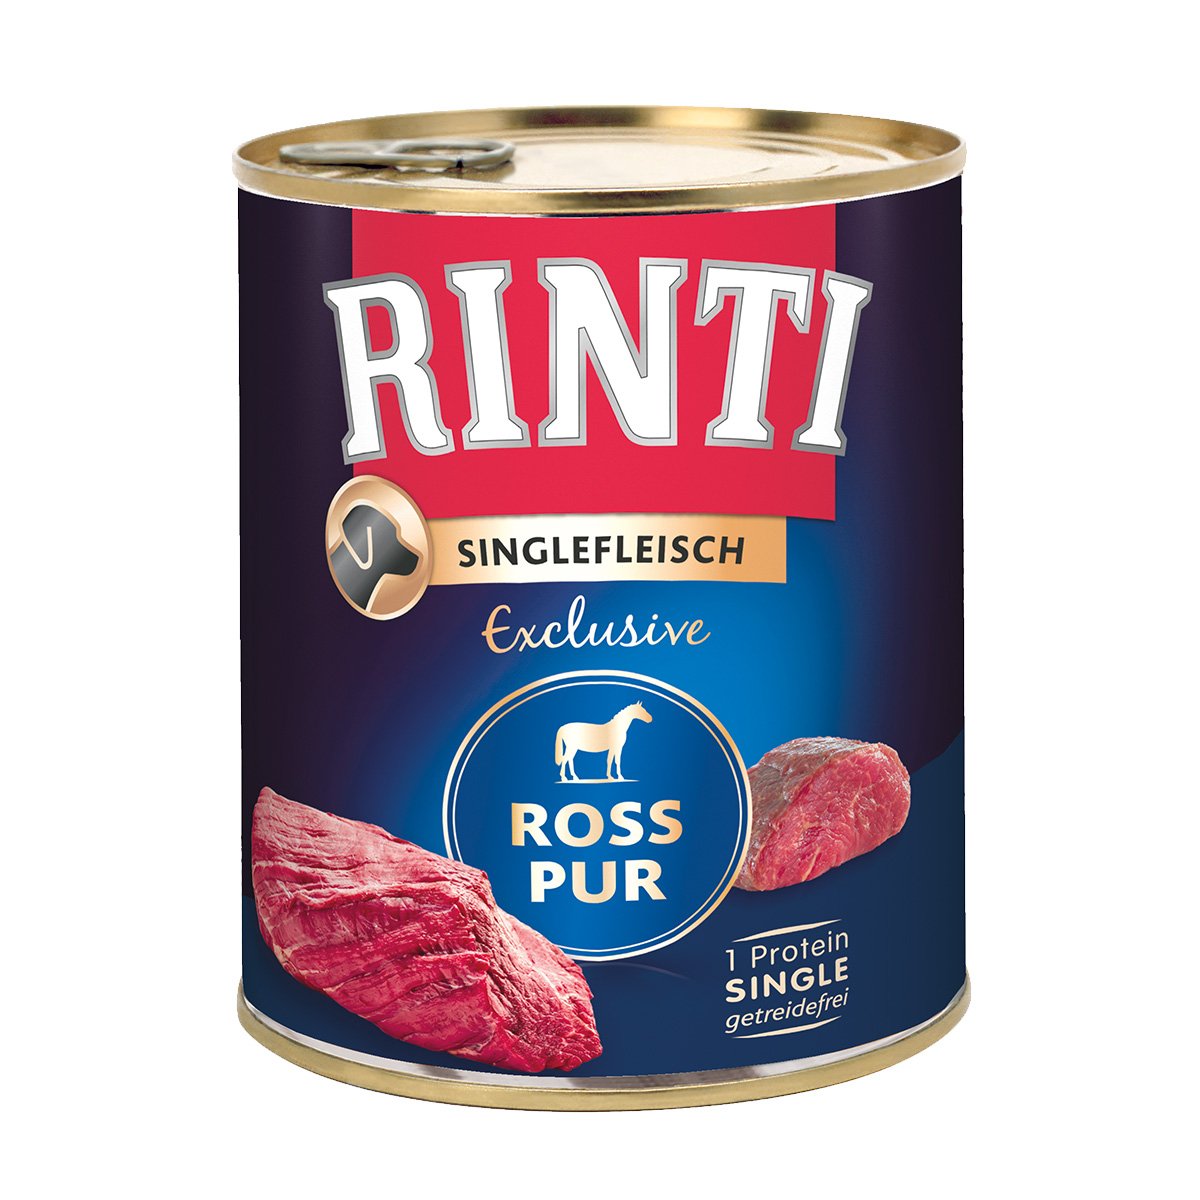 Rinti Singlefleisch Ross pur 12x800g von Rinti